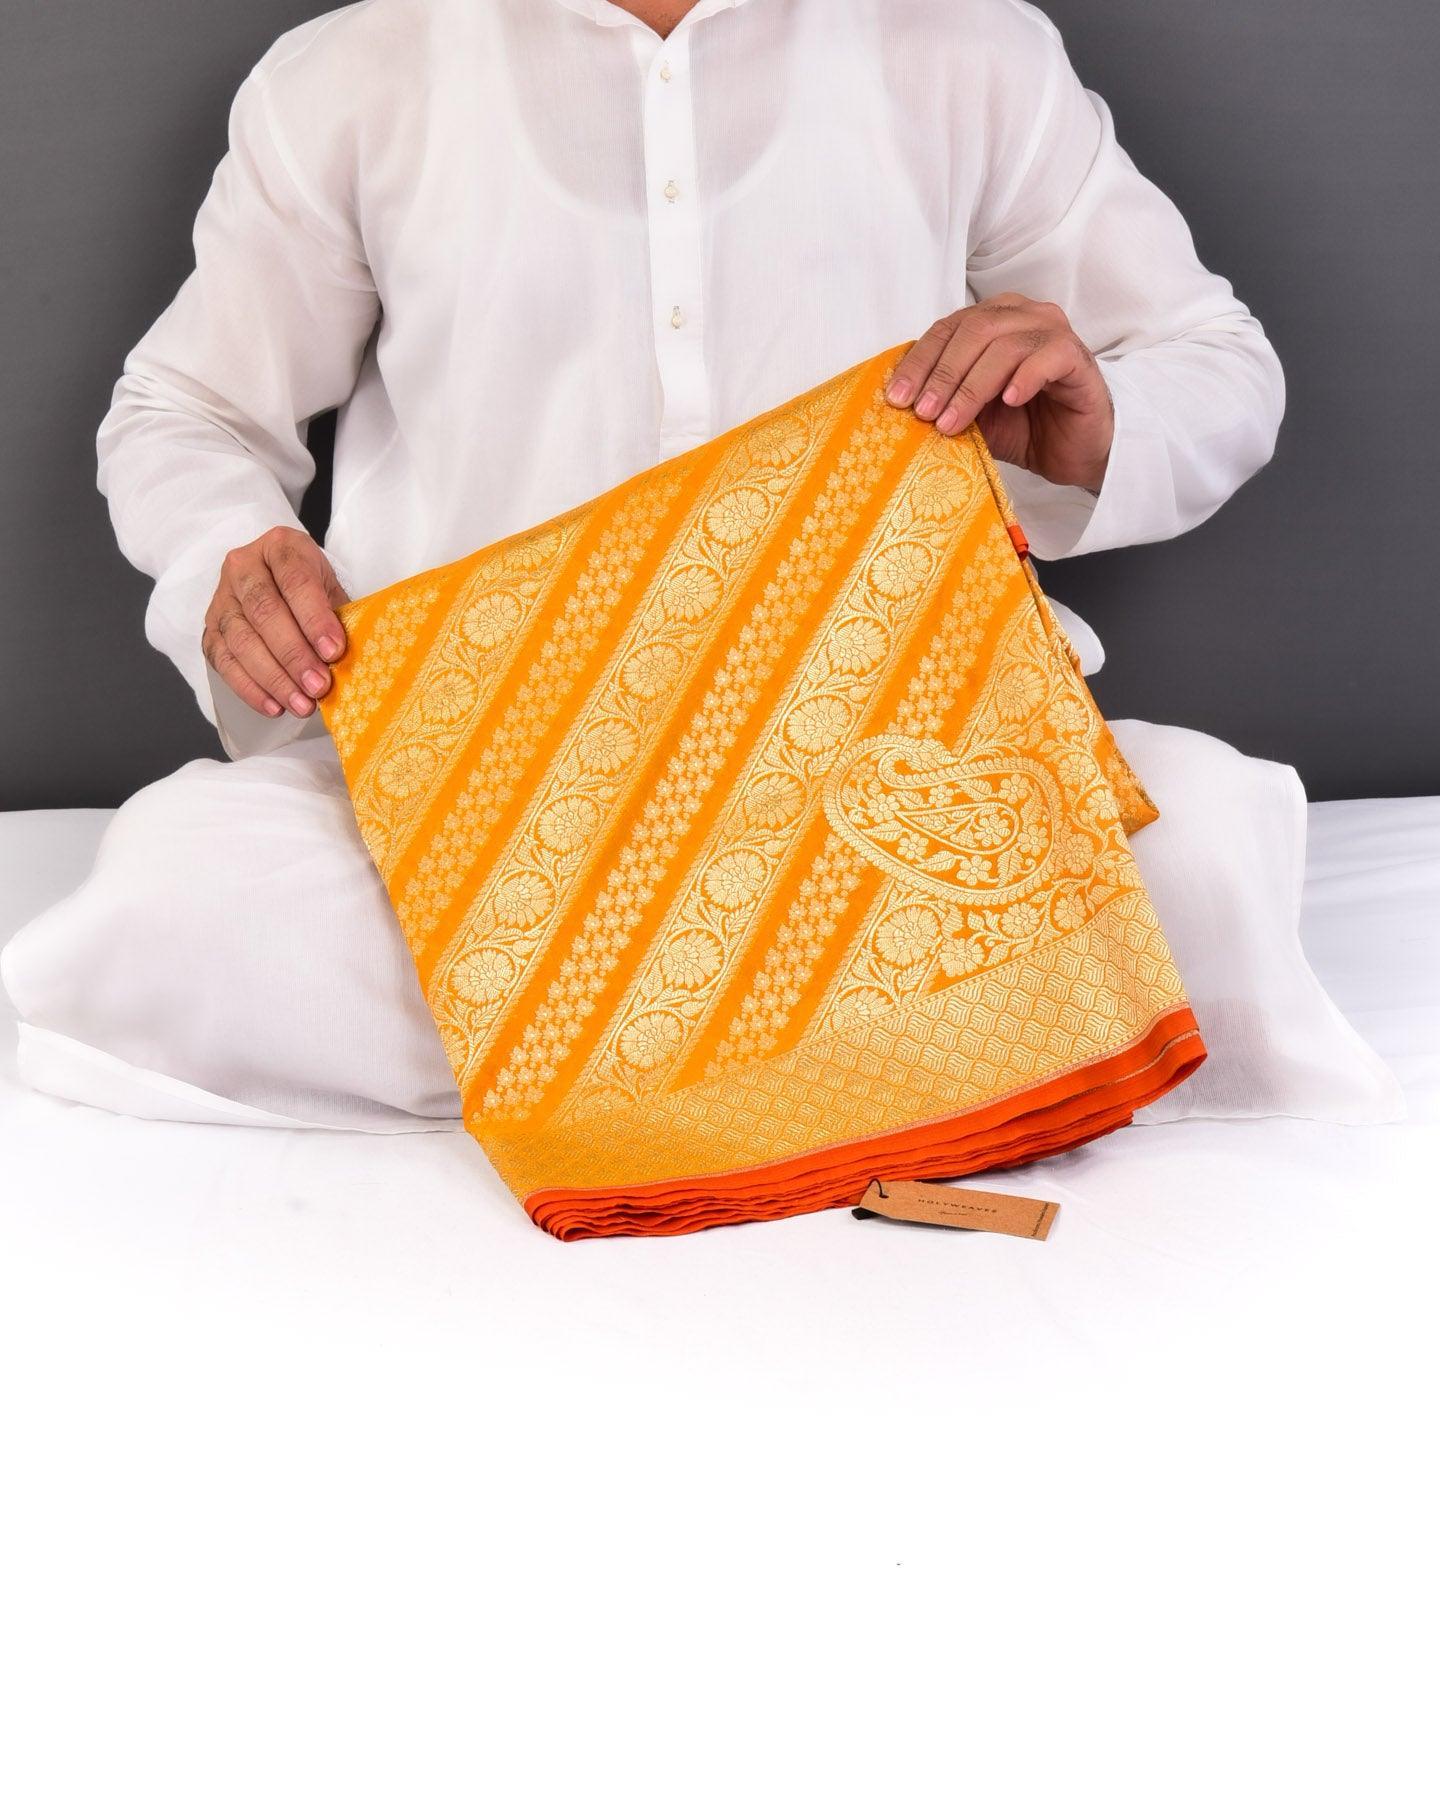 Marigold Yellow Banarasi Diagonal Aada Jaal Cutwork Brocade Woven Art Silk Saree - By HolyWeaves, Benares